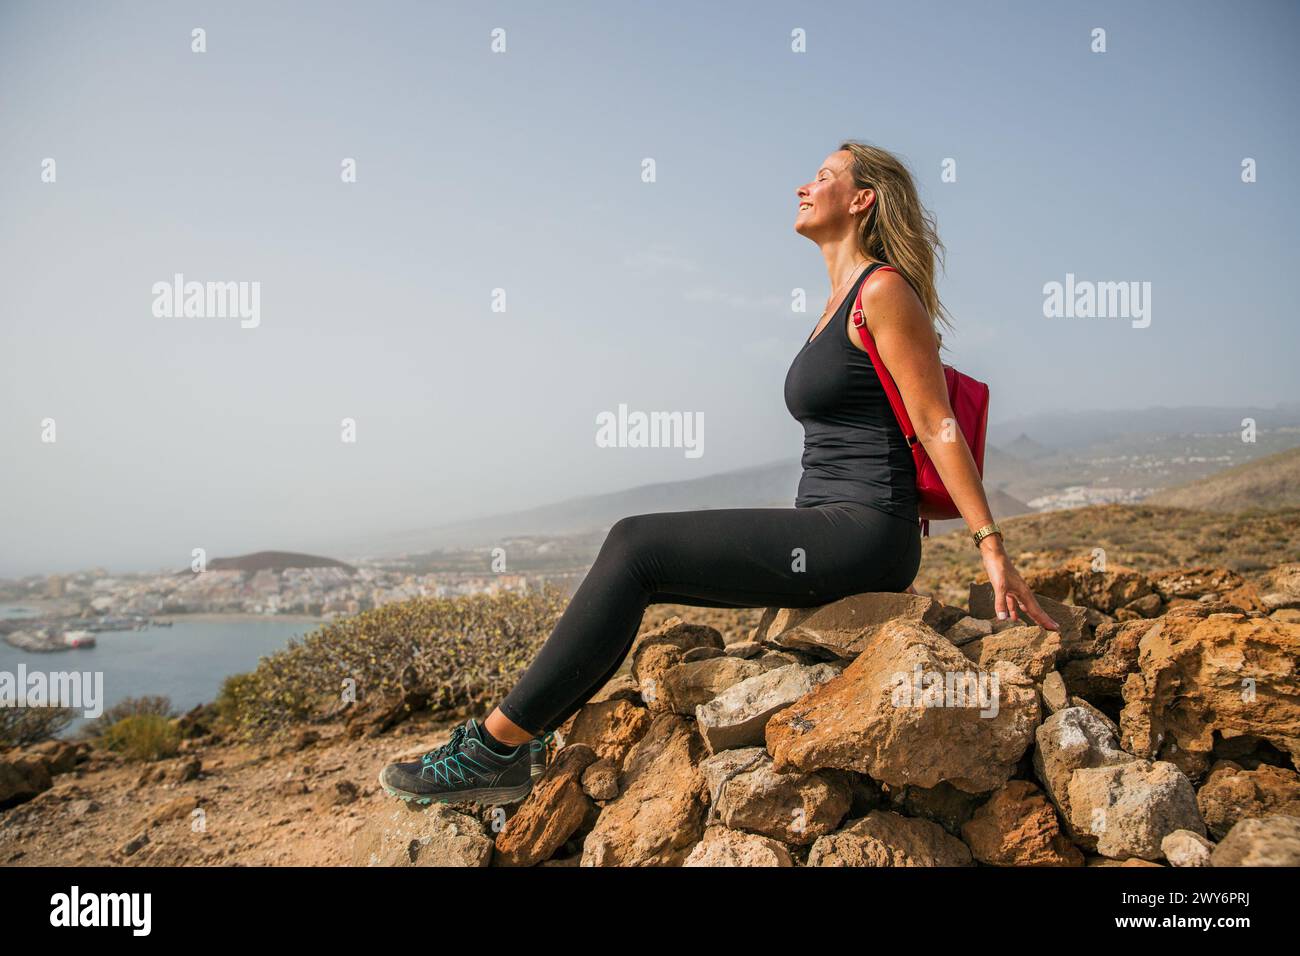 Una donna è seduta su una roccia che si affaccia sull'oceano. Indossa una canotta nera e pantaloni neri Foto Stock